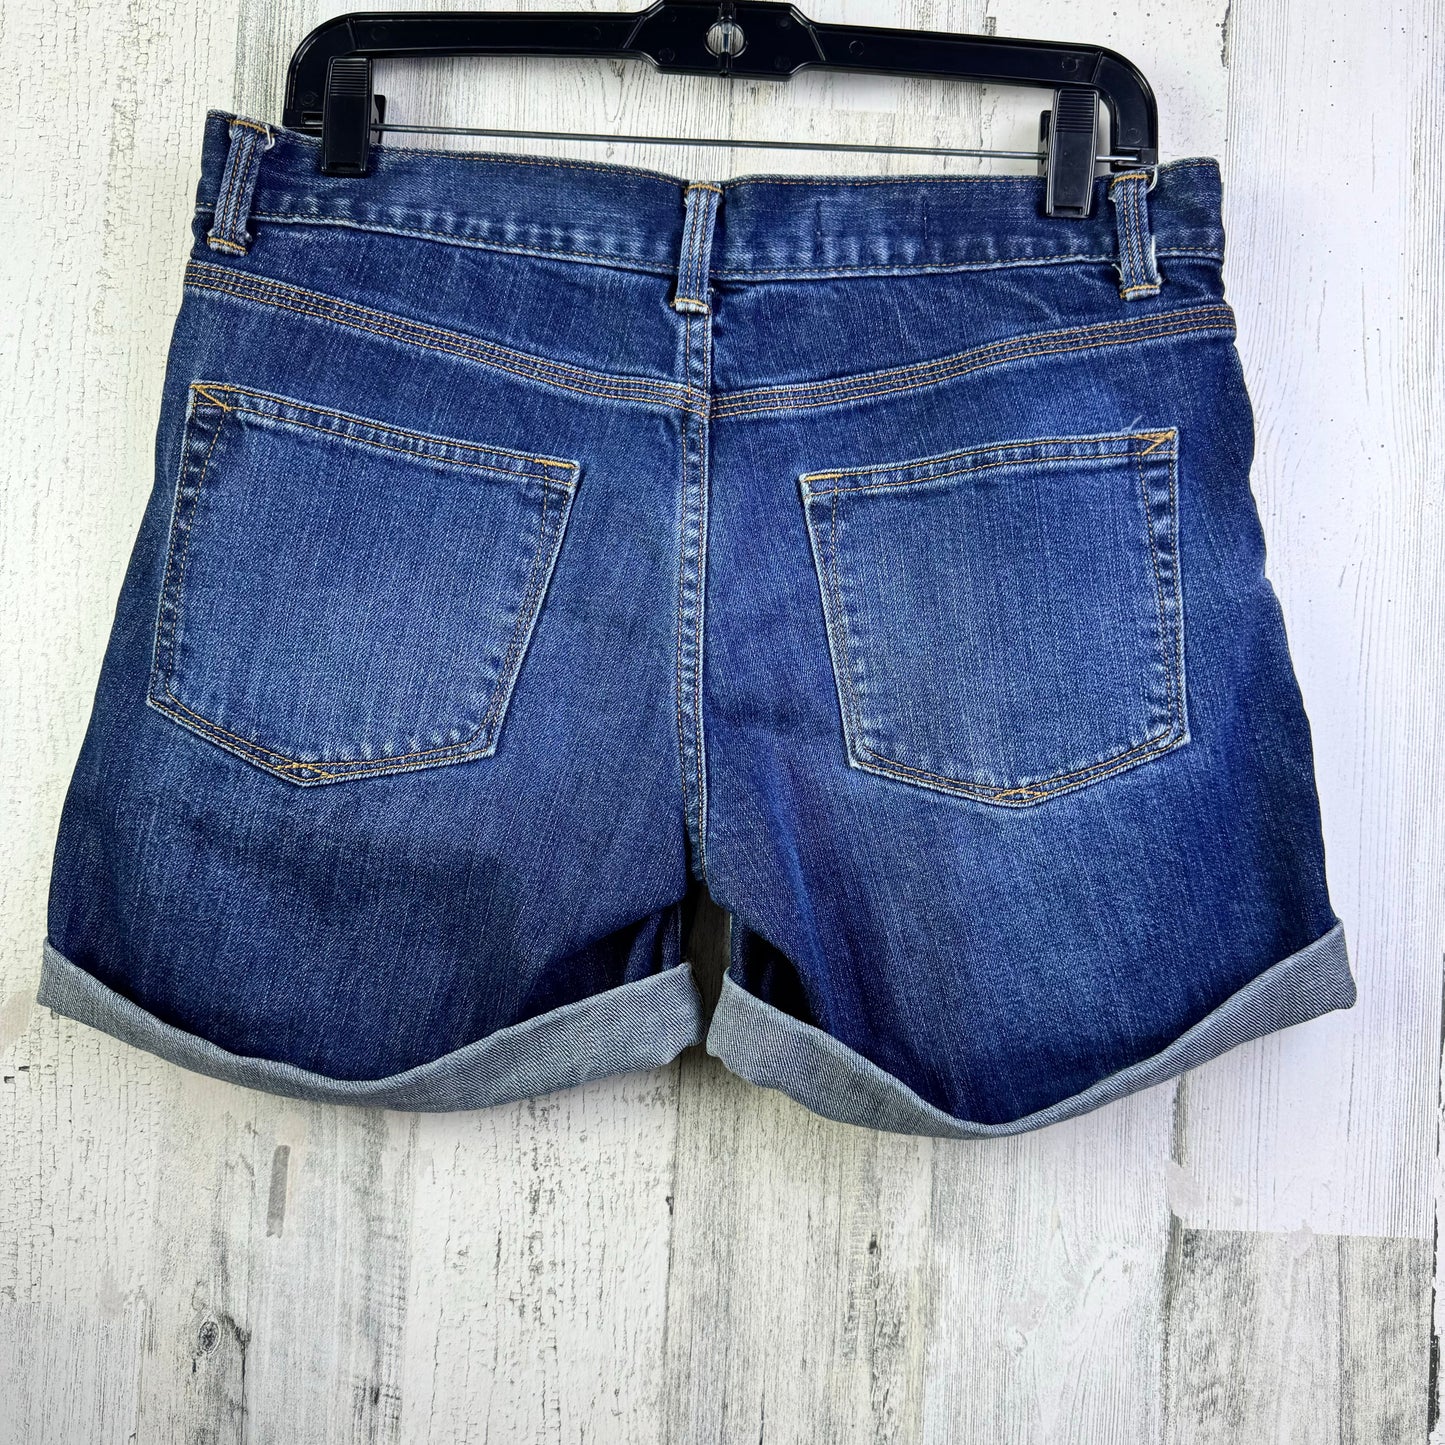 Blue Denim Shorts Gap, Size 2